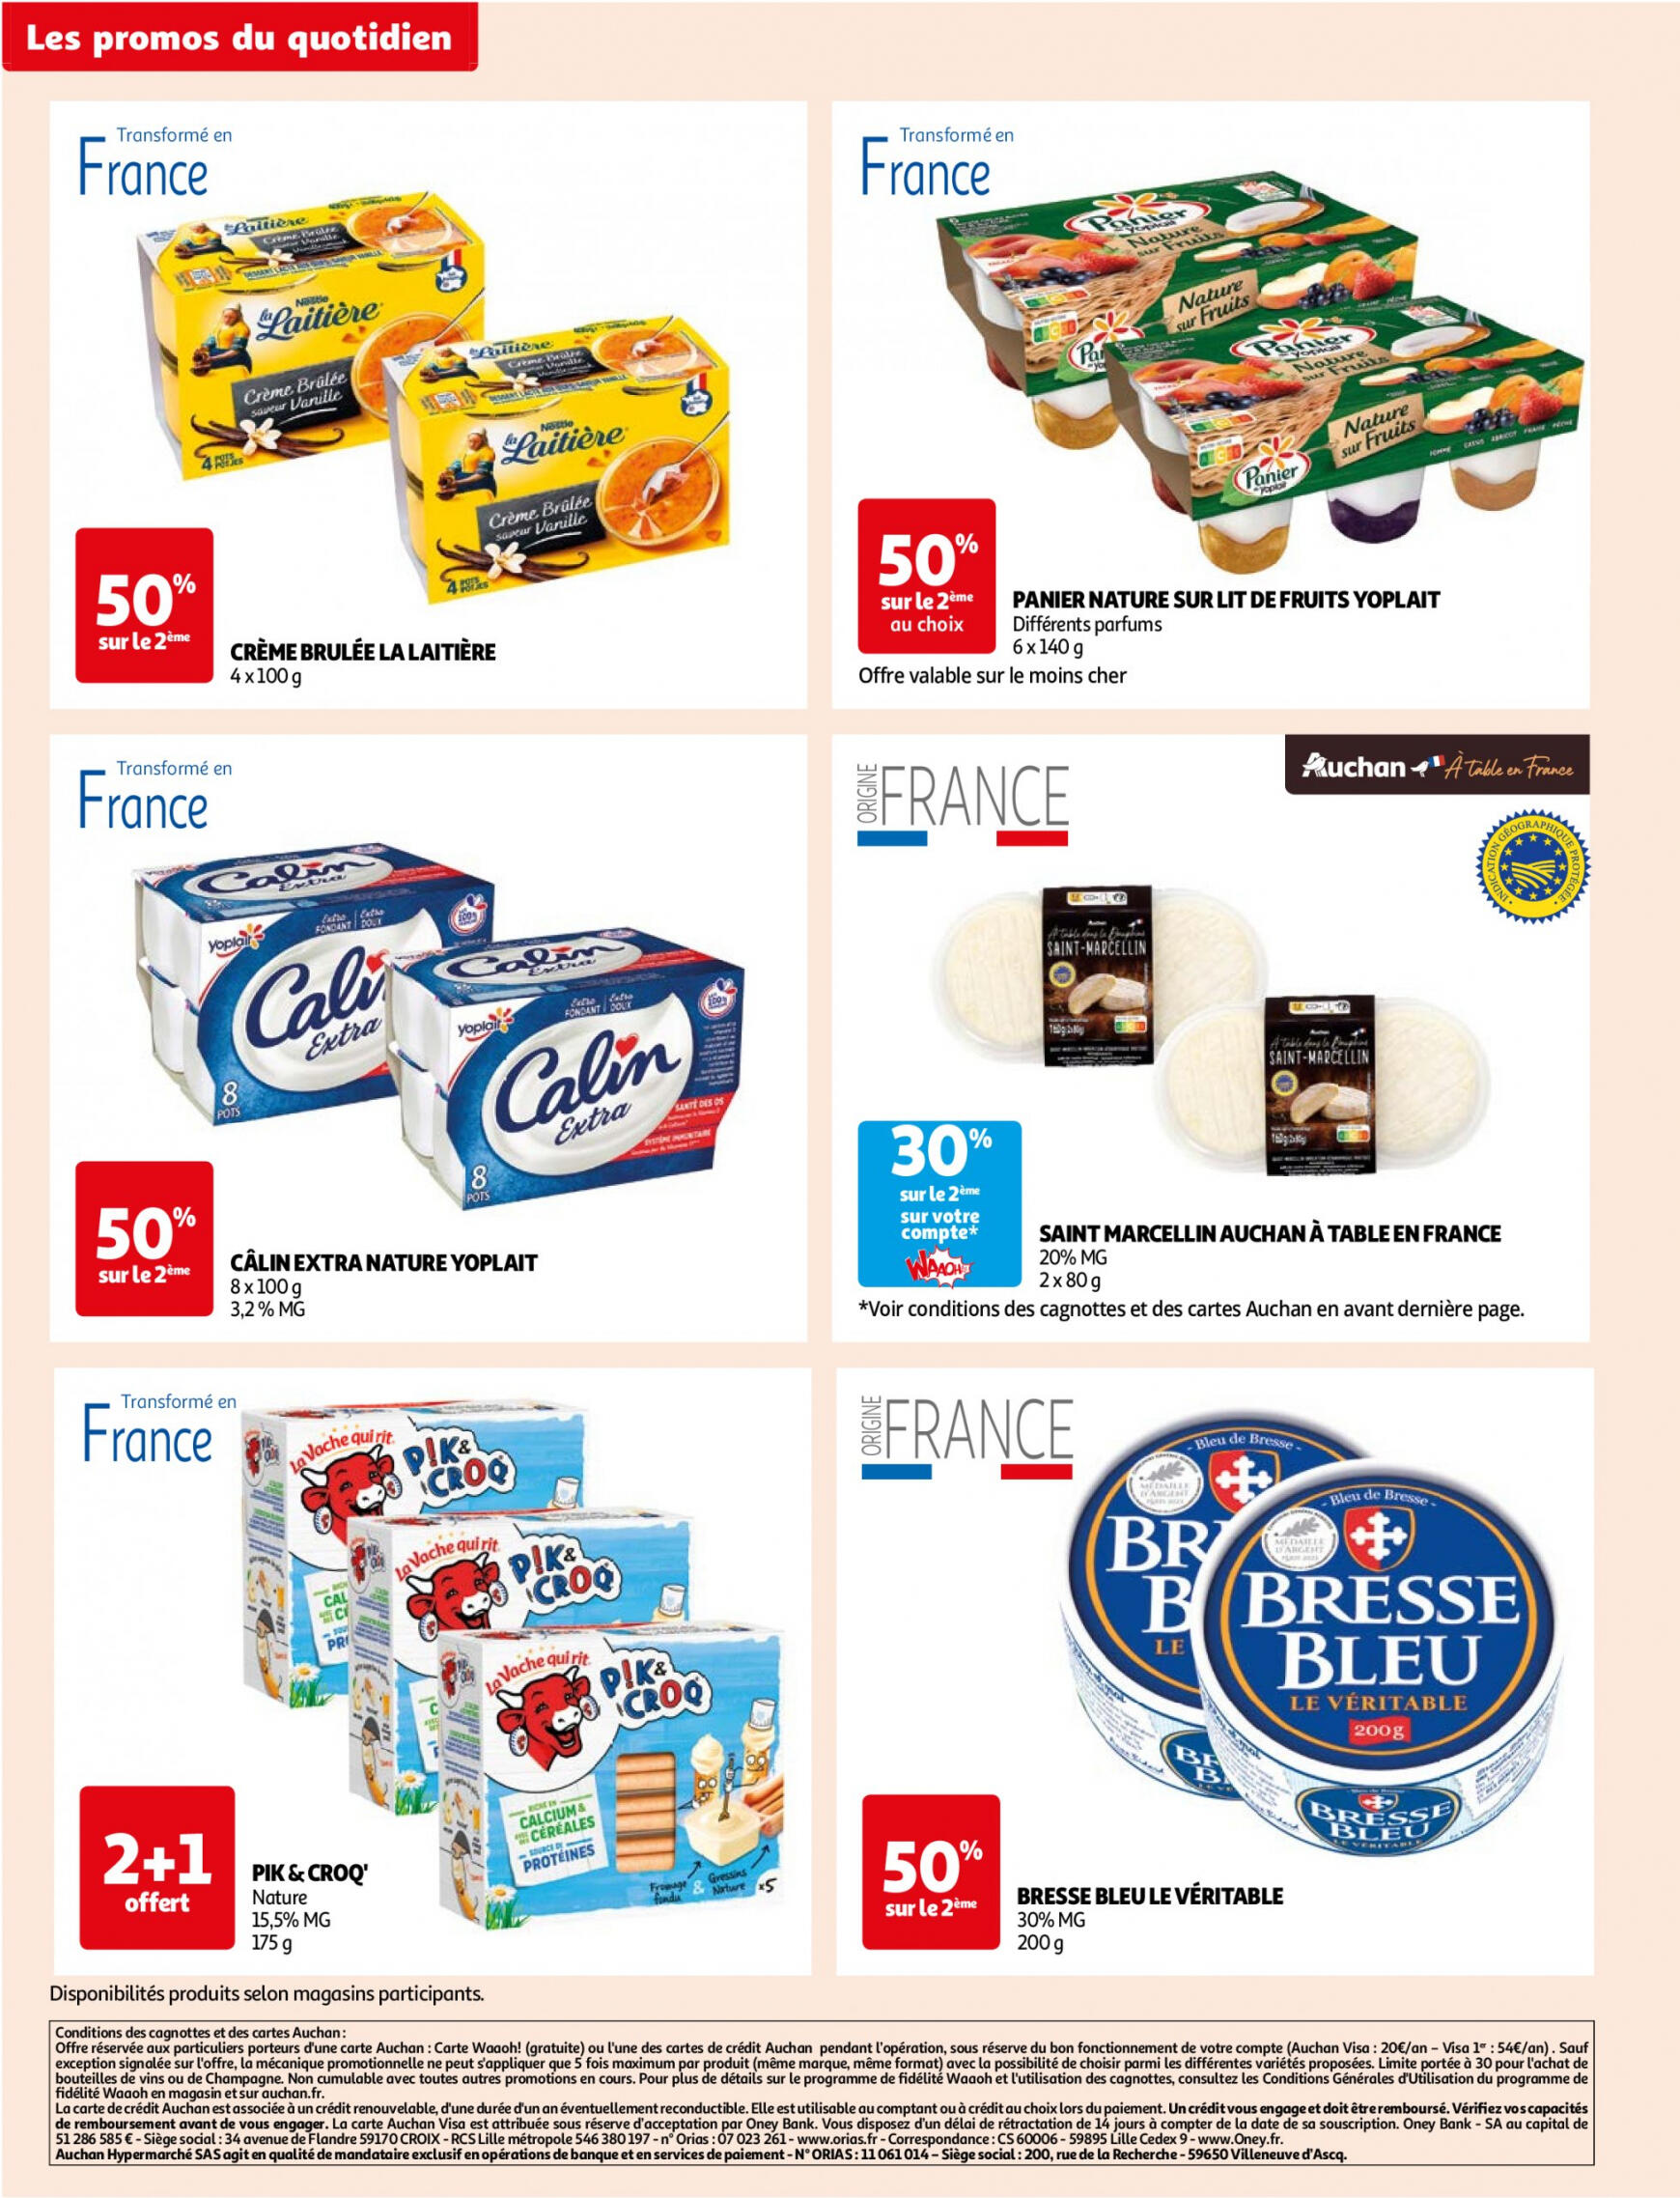 auchan - Prospectus Auchan Supermarché - Des économies au quotidien dans votre super actuel 14.05. - 02.06. - page: 8